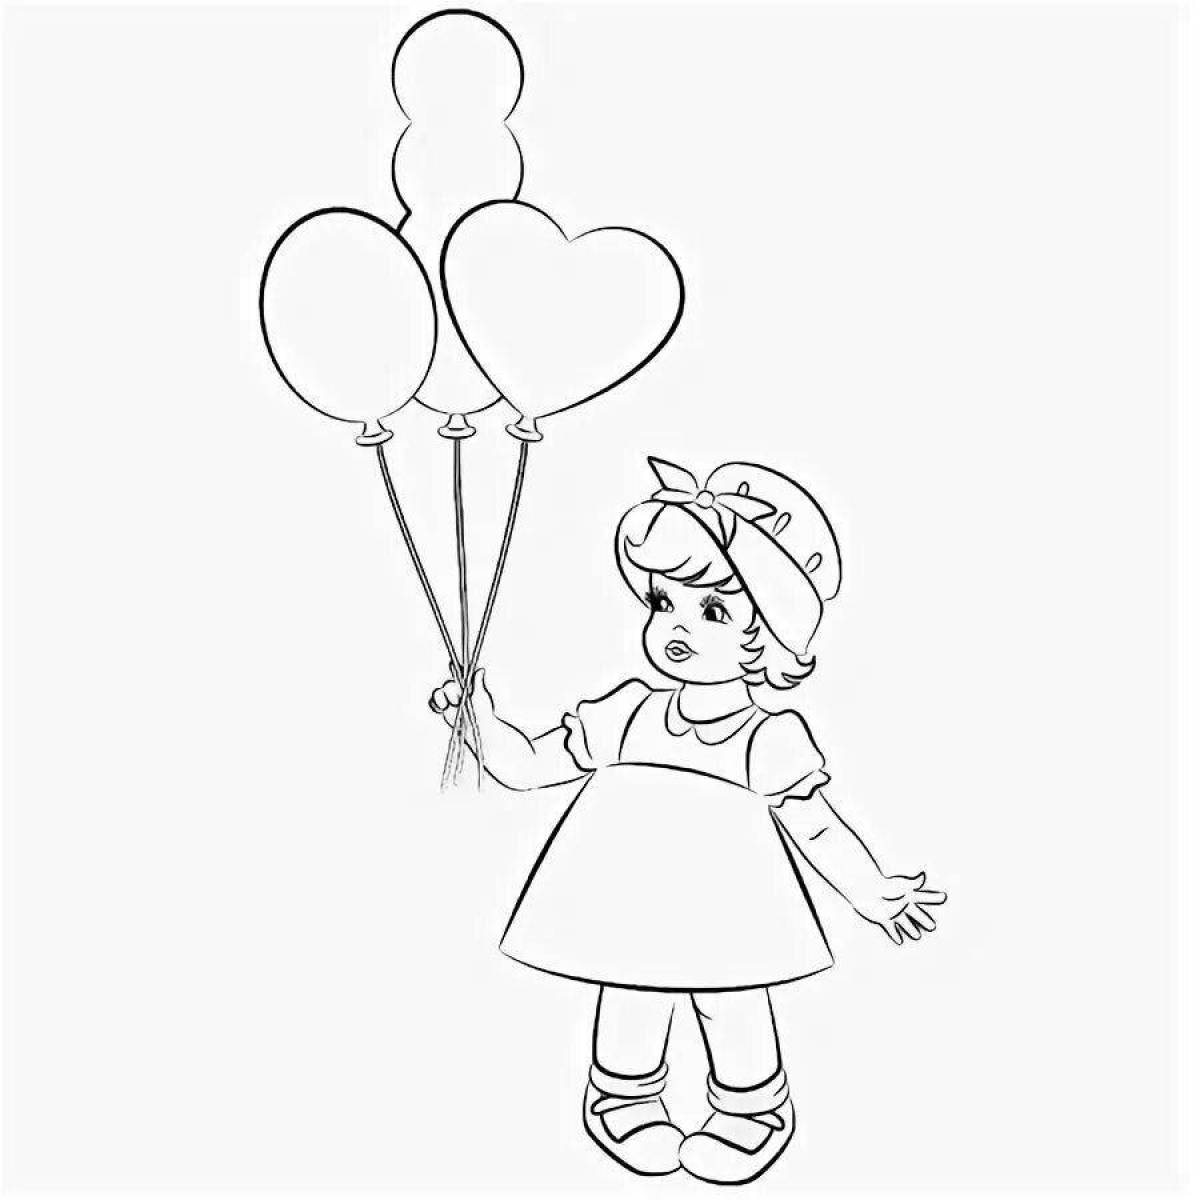 Balloon girl #2